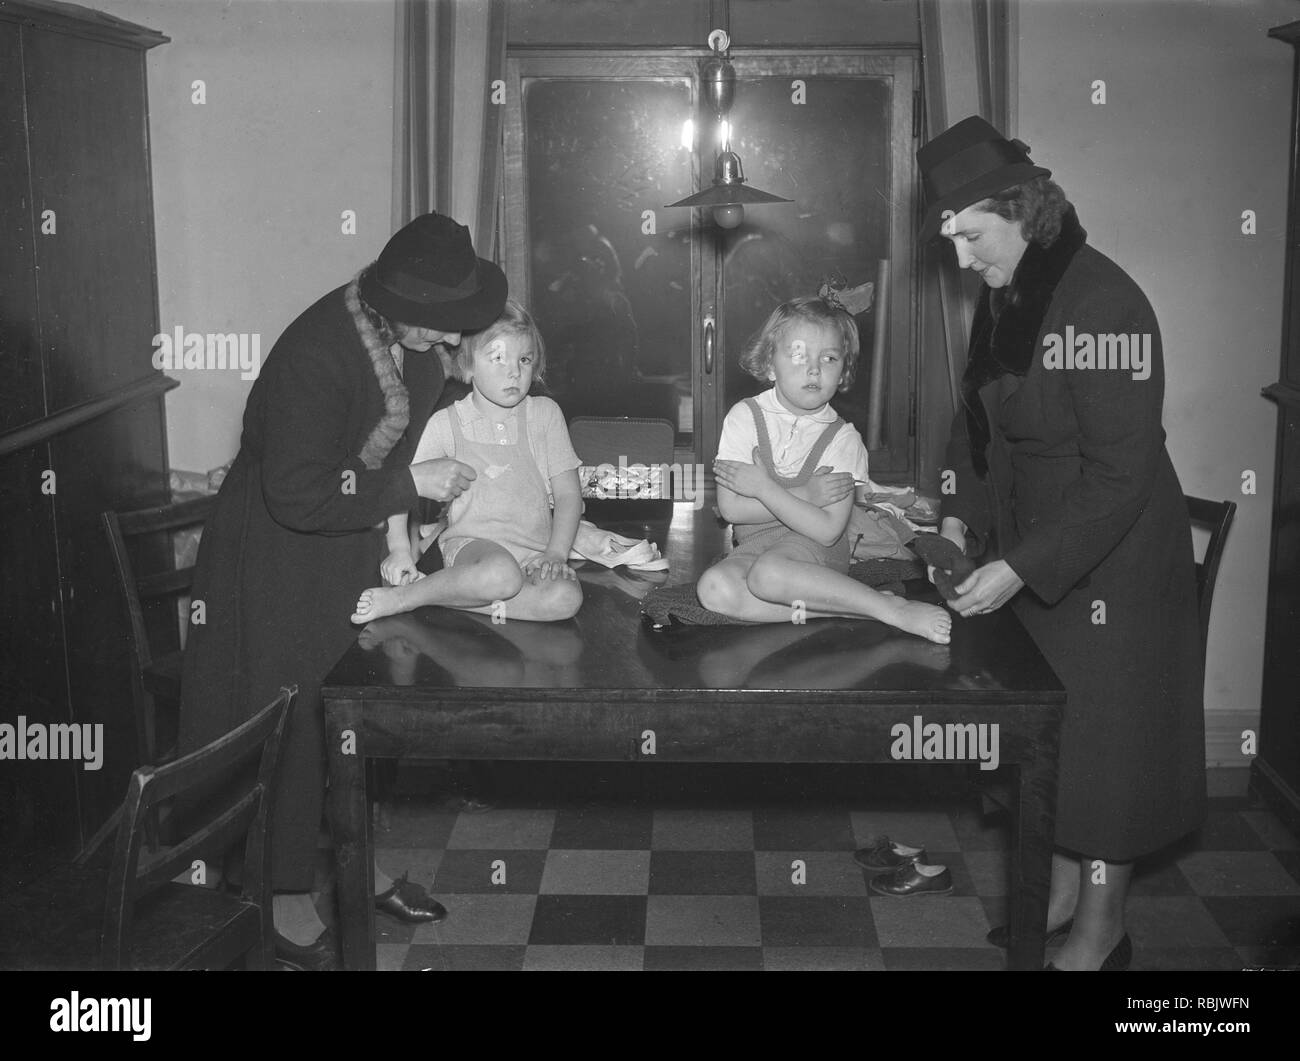 Kinder, die in den 1930er Jahren. Zwei kleine Mädchen sind gefallen wird aus für Tanzstunden durch ihre Mütter sie nicht zu scharf zu ändern Kleid für die Gelegenheit und scheinen. Foto Kristoffersson Ref 13-6. Schweden 1939 Stockfoto